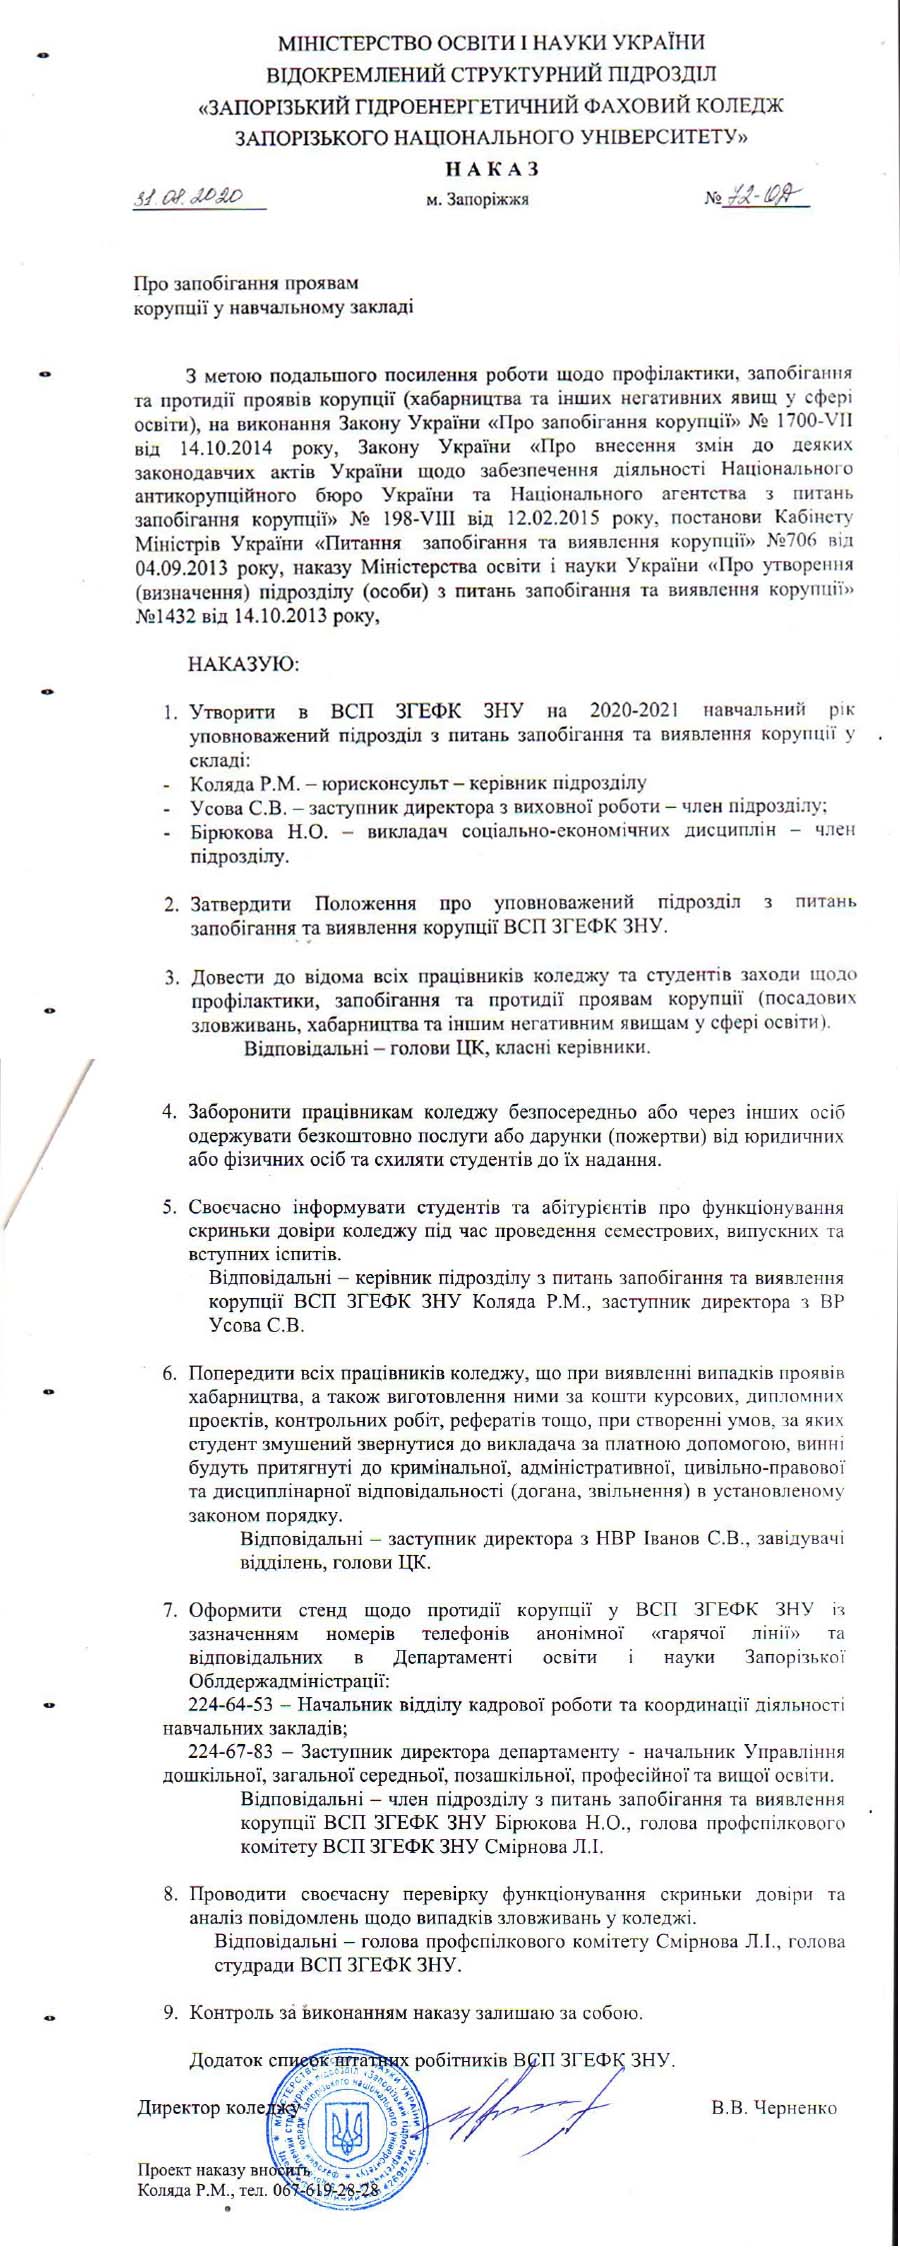 Наказ про запобігання проявам корупції у НЗ № 72-ОД від 31.08.2020 р.